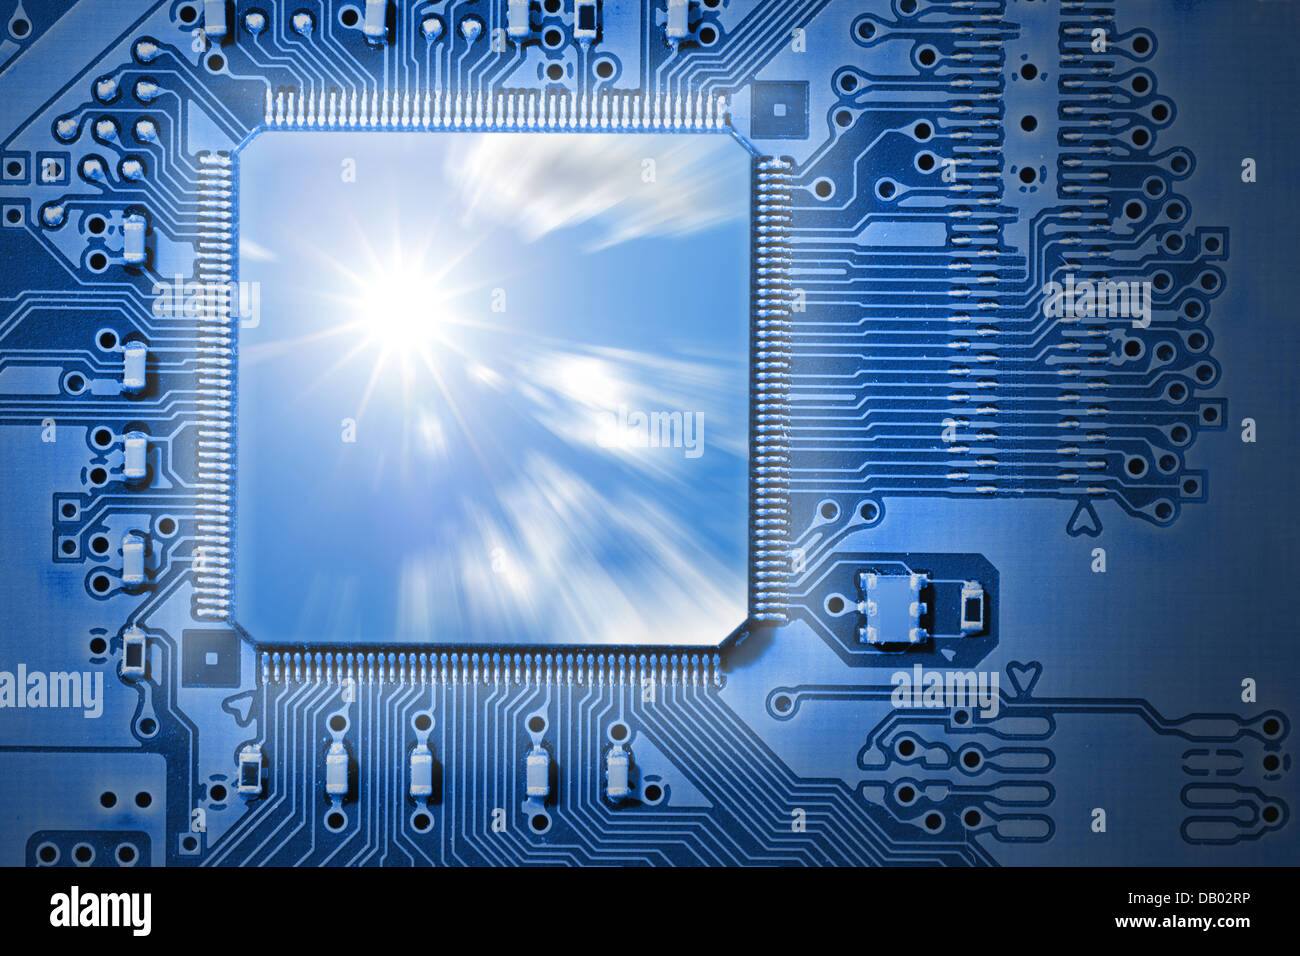 Schnelle CPU / Prozessor mit Sonne und Wolke Grafik, vertreten Kraft, Geschwindigkeit und Effizienz, blaue Elektronikplatine Stockfoto